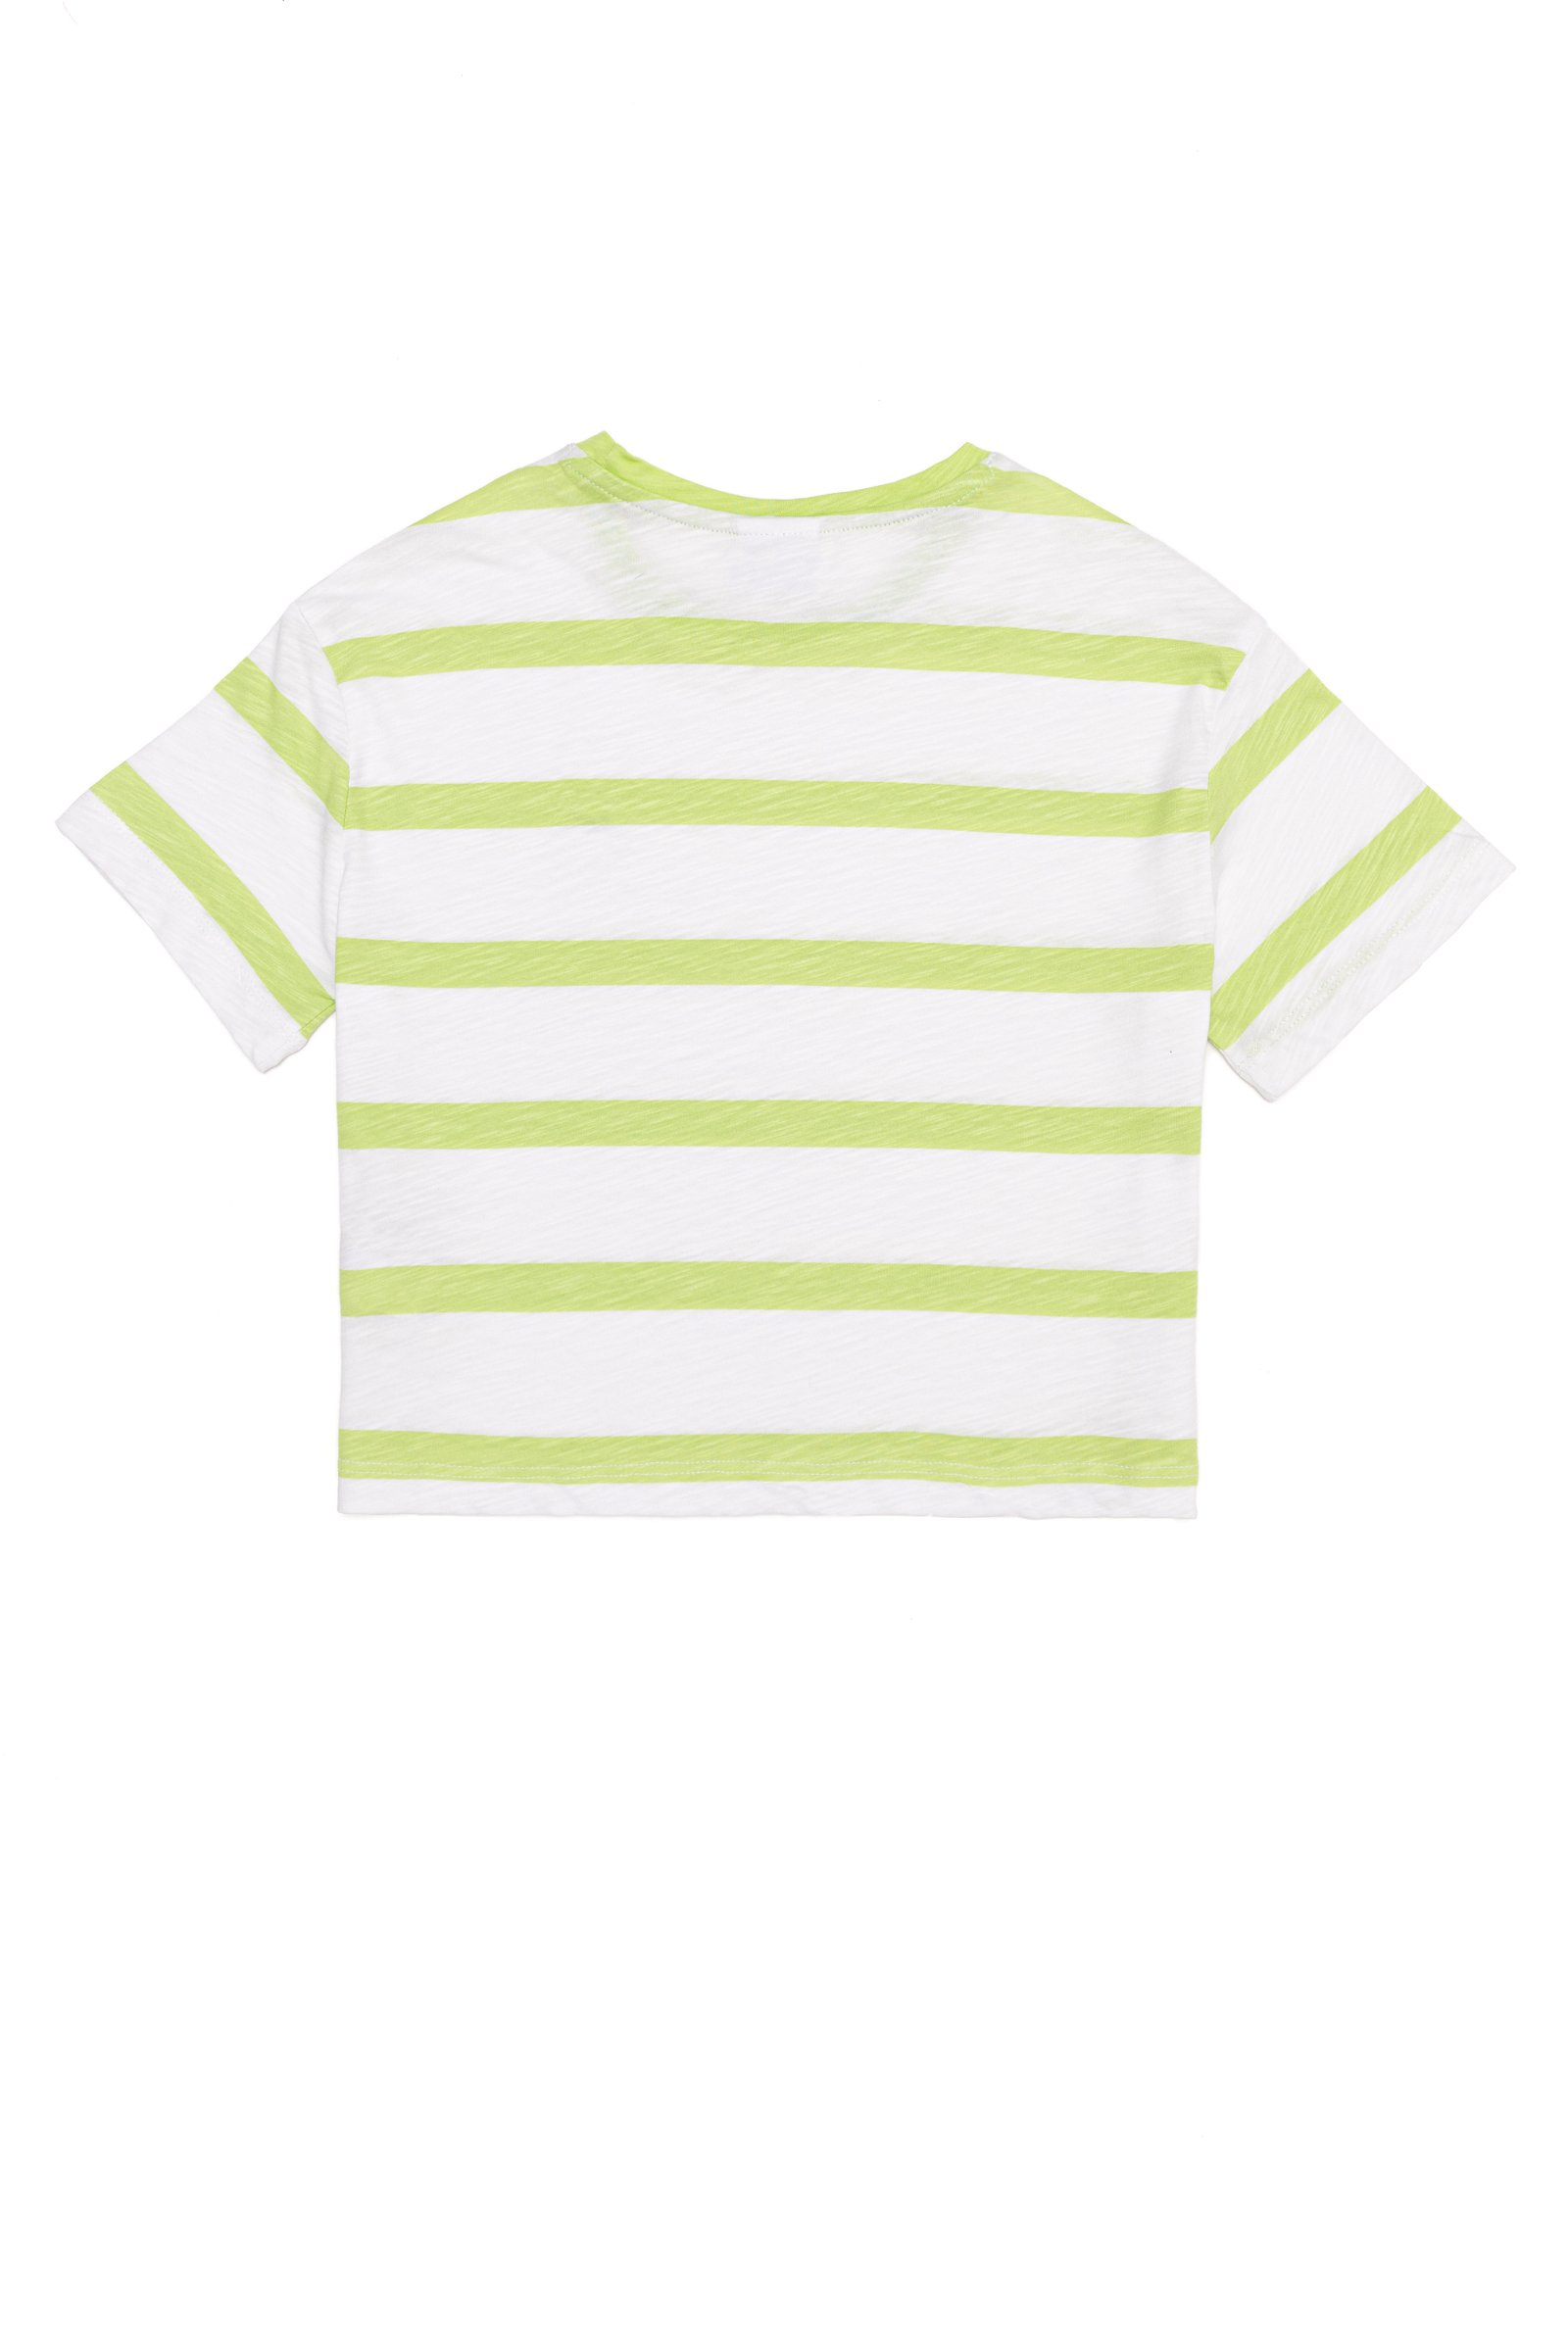 تی شرت  سبز پسته ای  Crop Top  دخترانه یو اس پولو